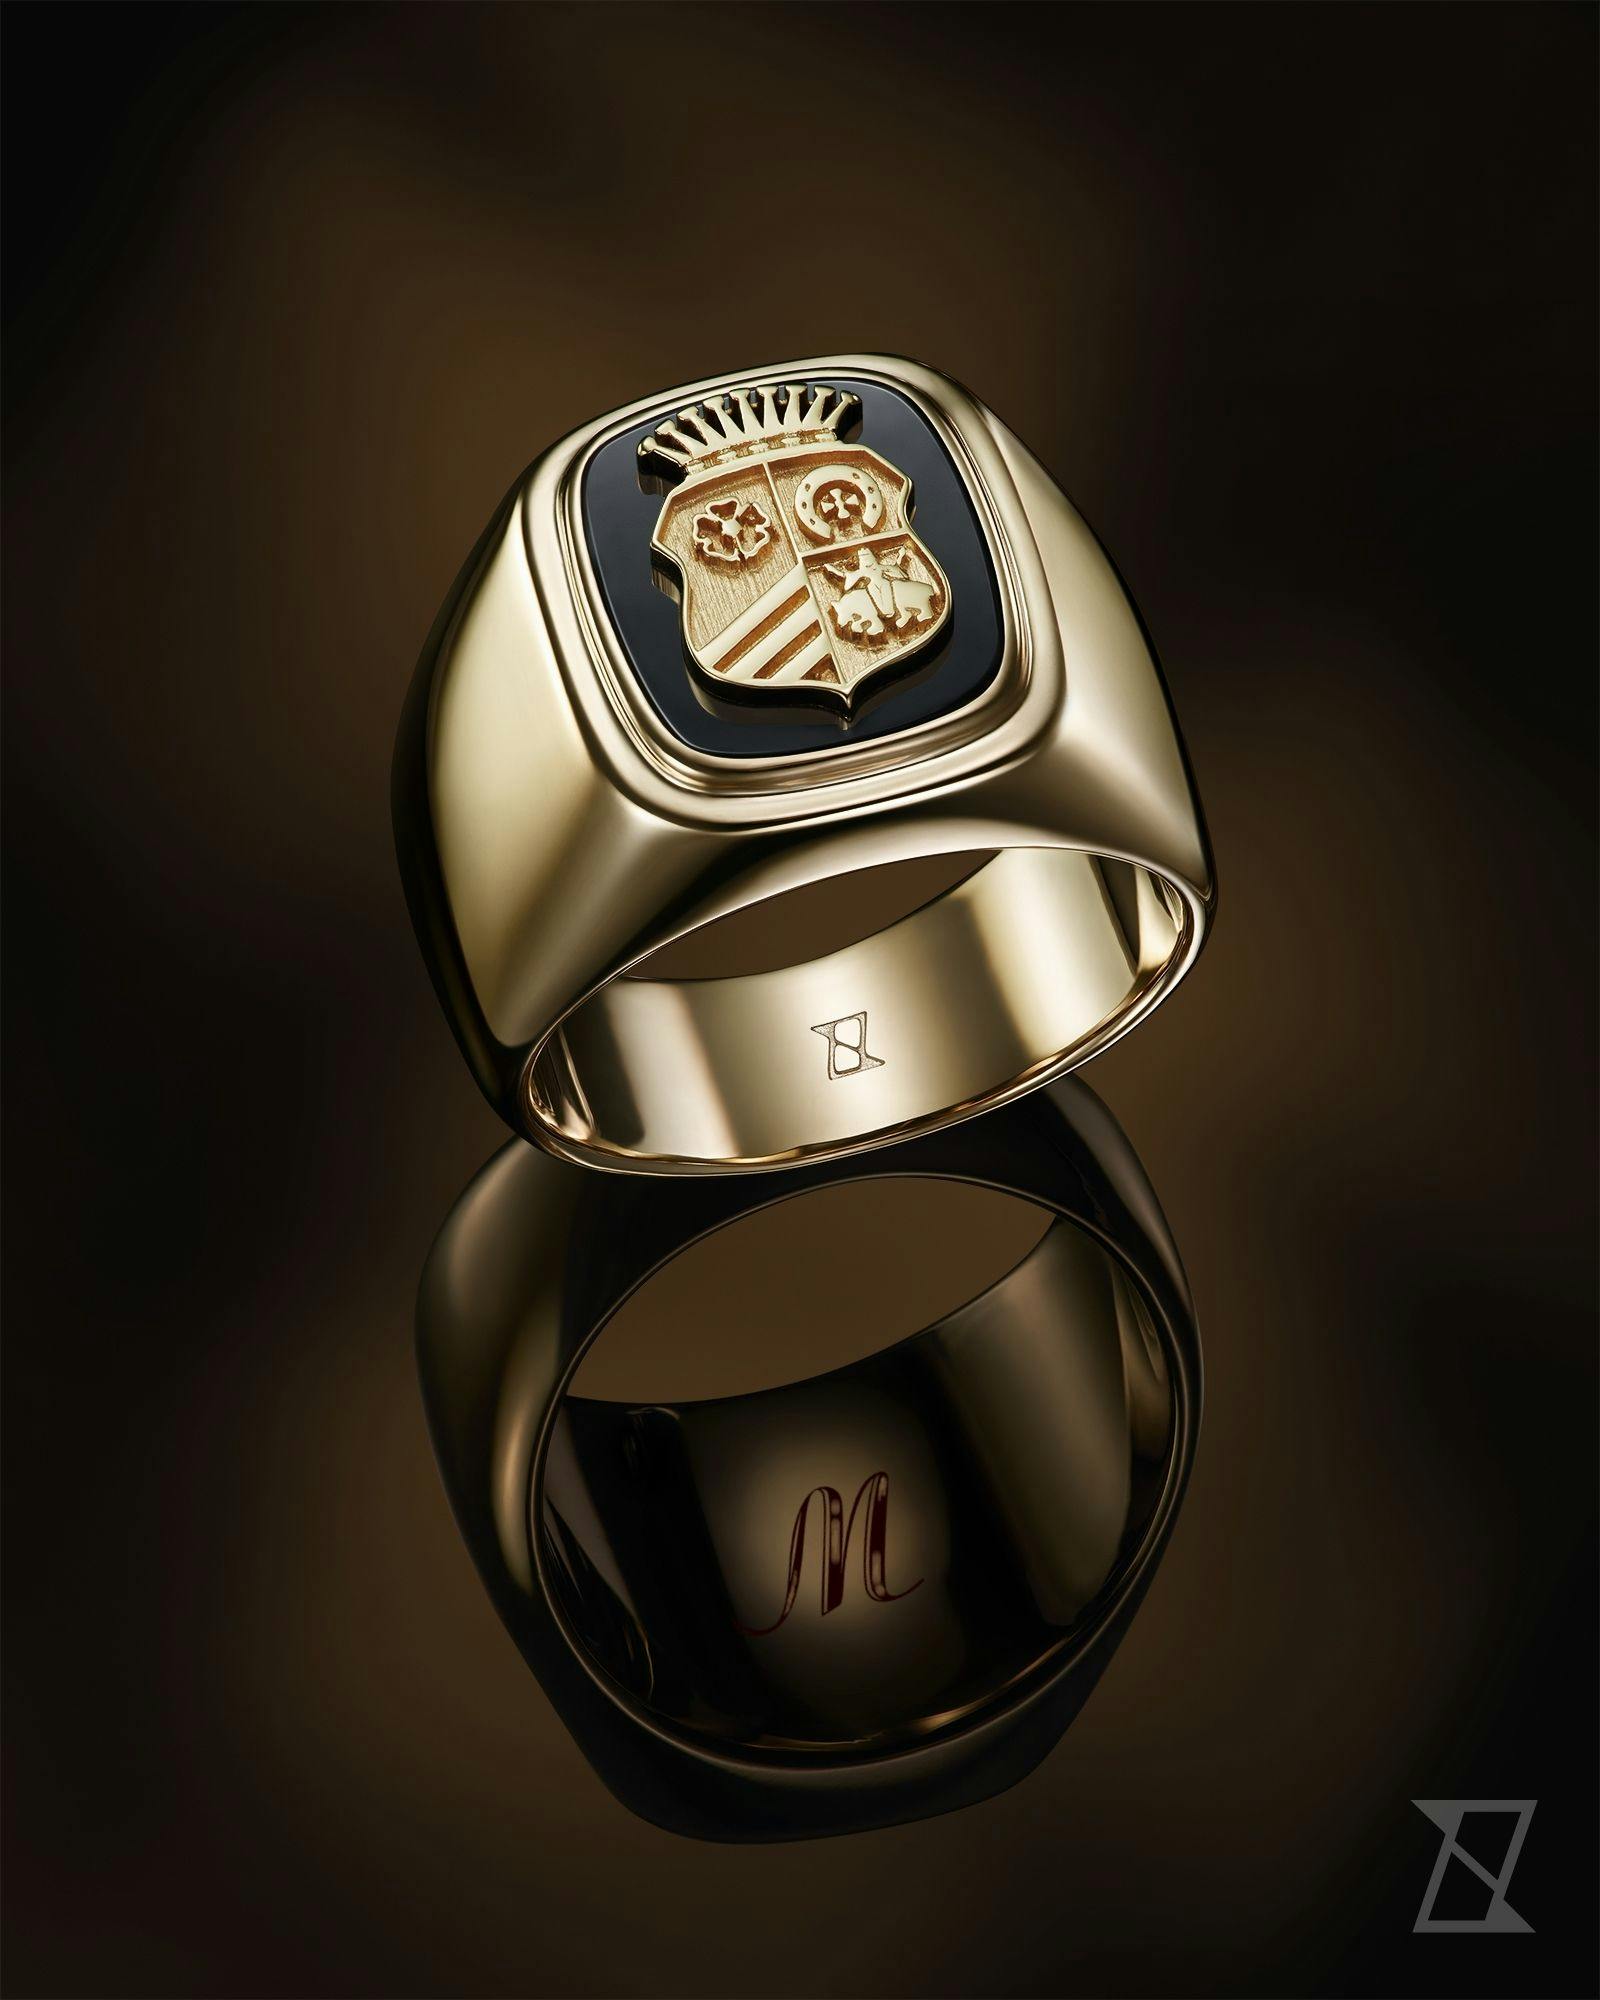 Bespoke signet ring with engraving